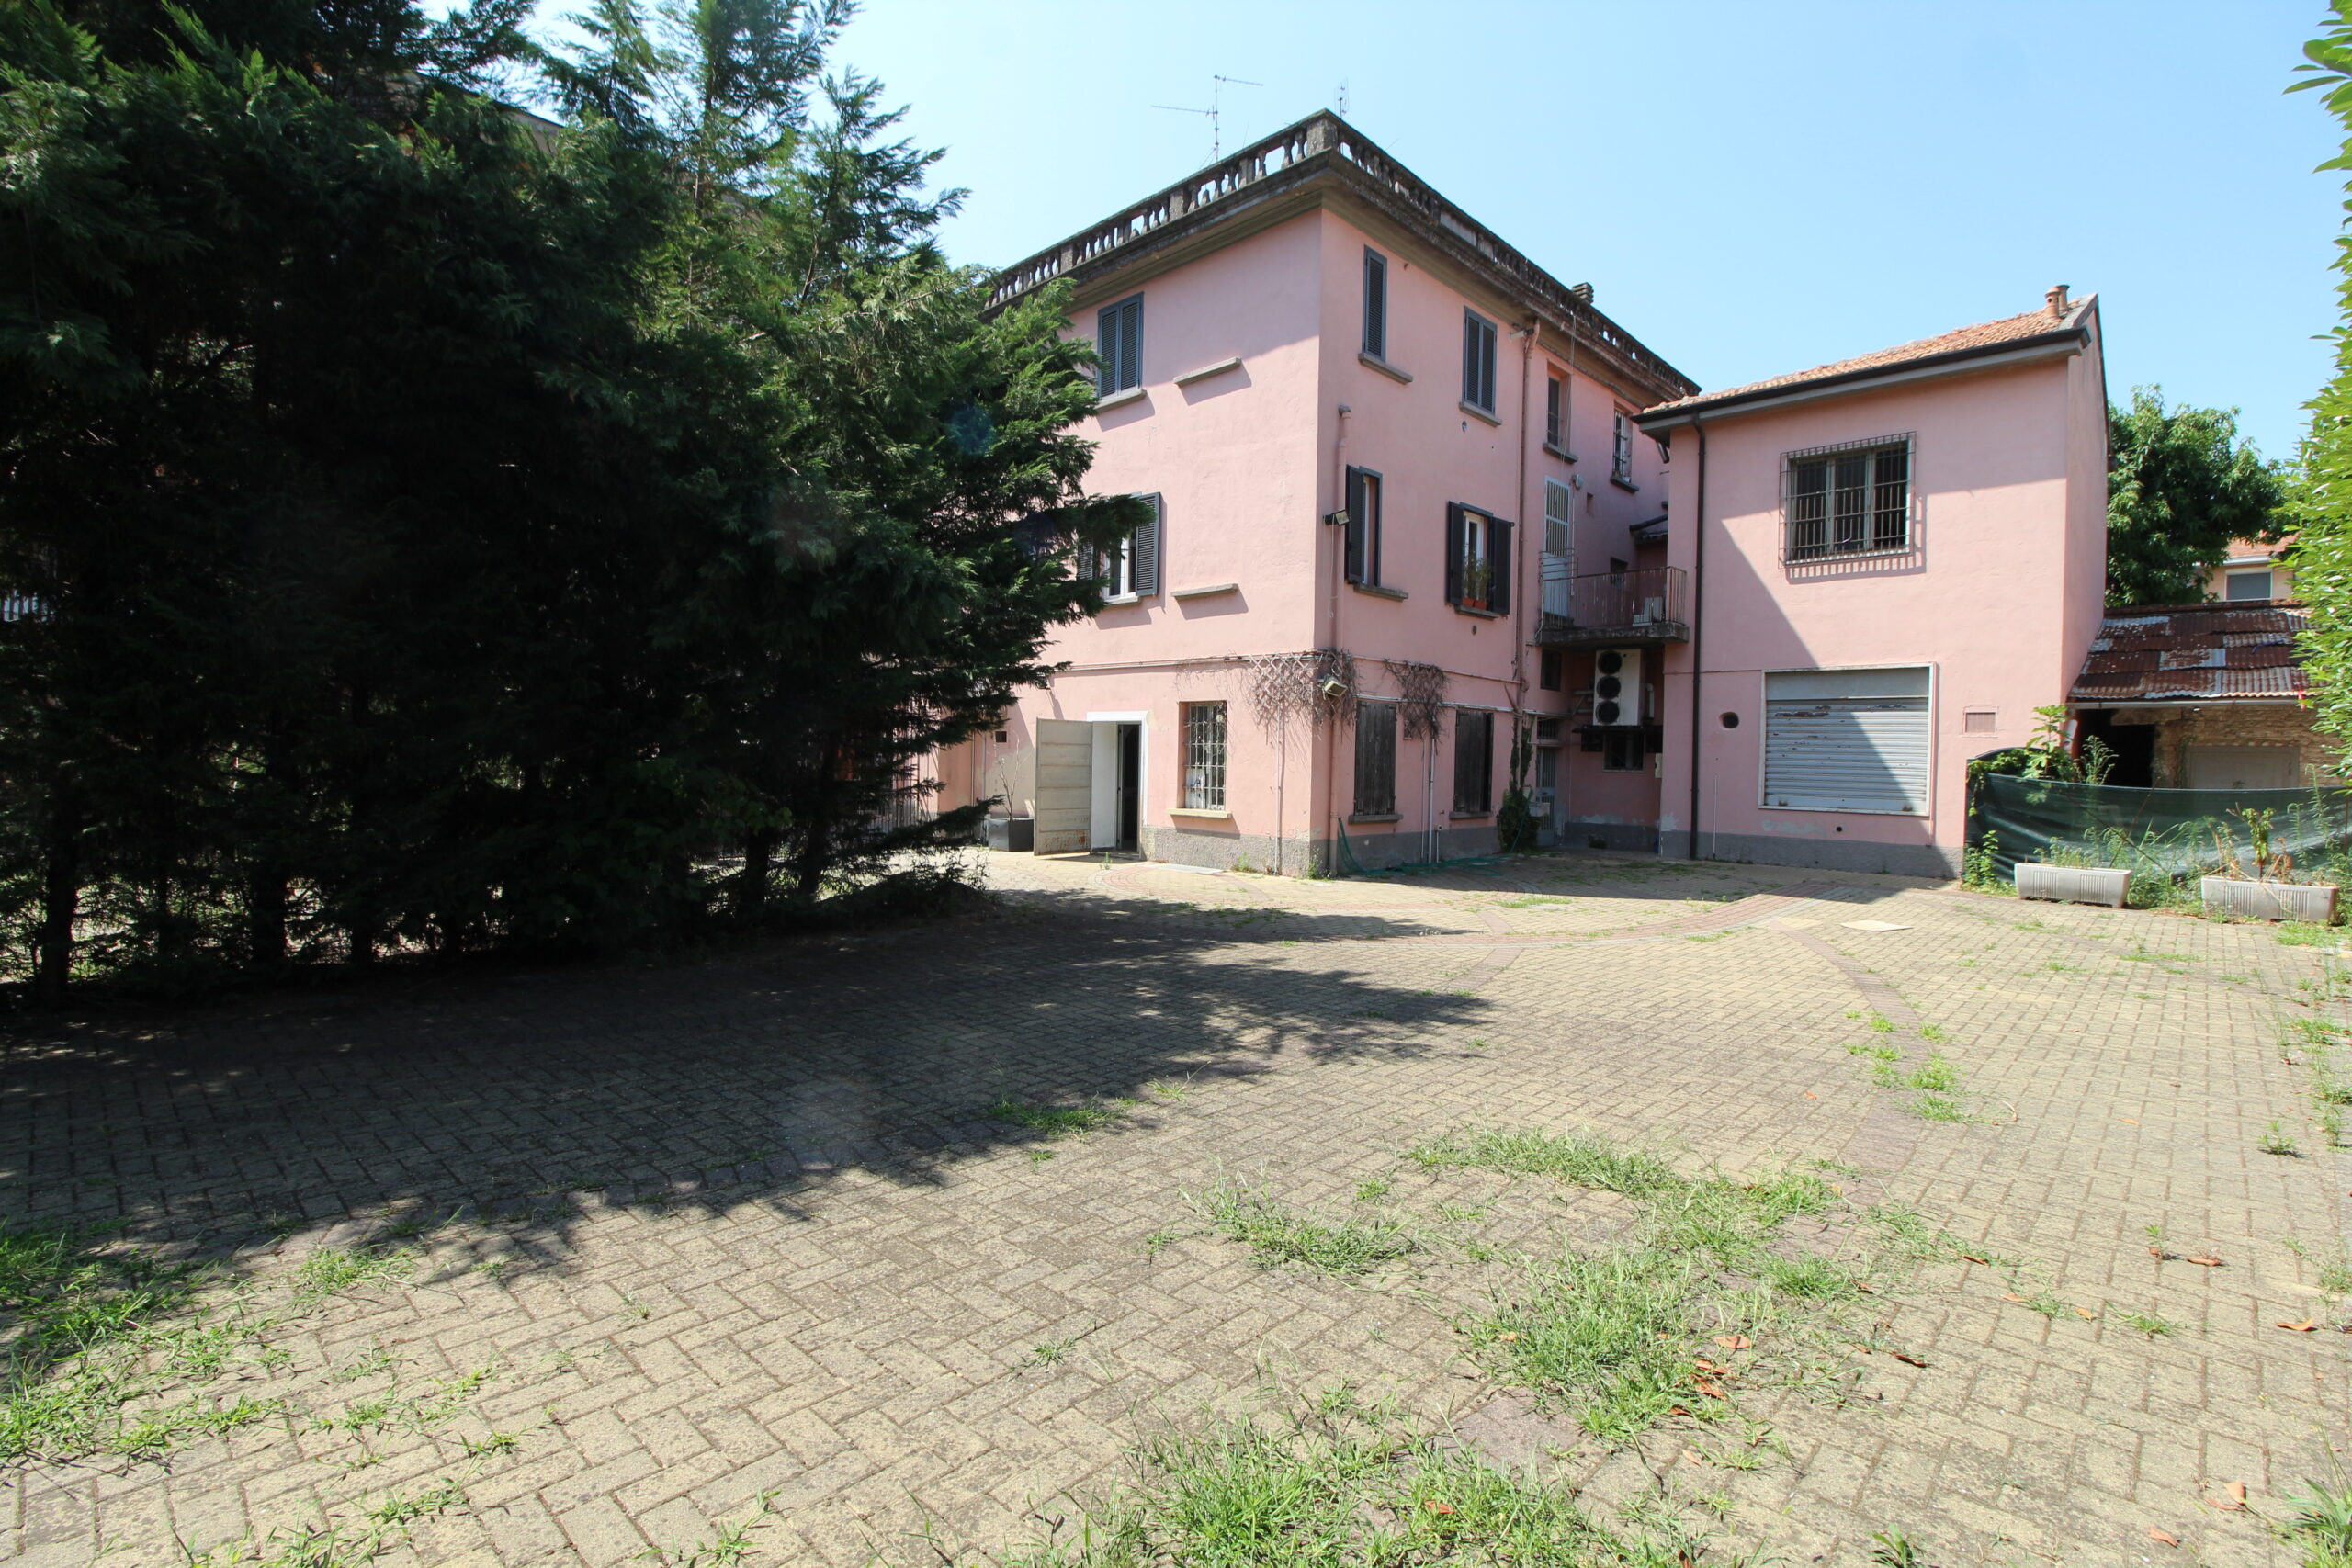 Locale commerciale in Affitto Sant’Angelo Lodigiano, Via Giuseppe Mazzini 27